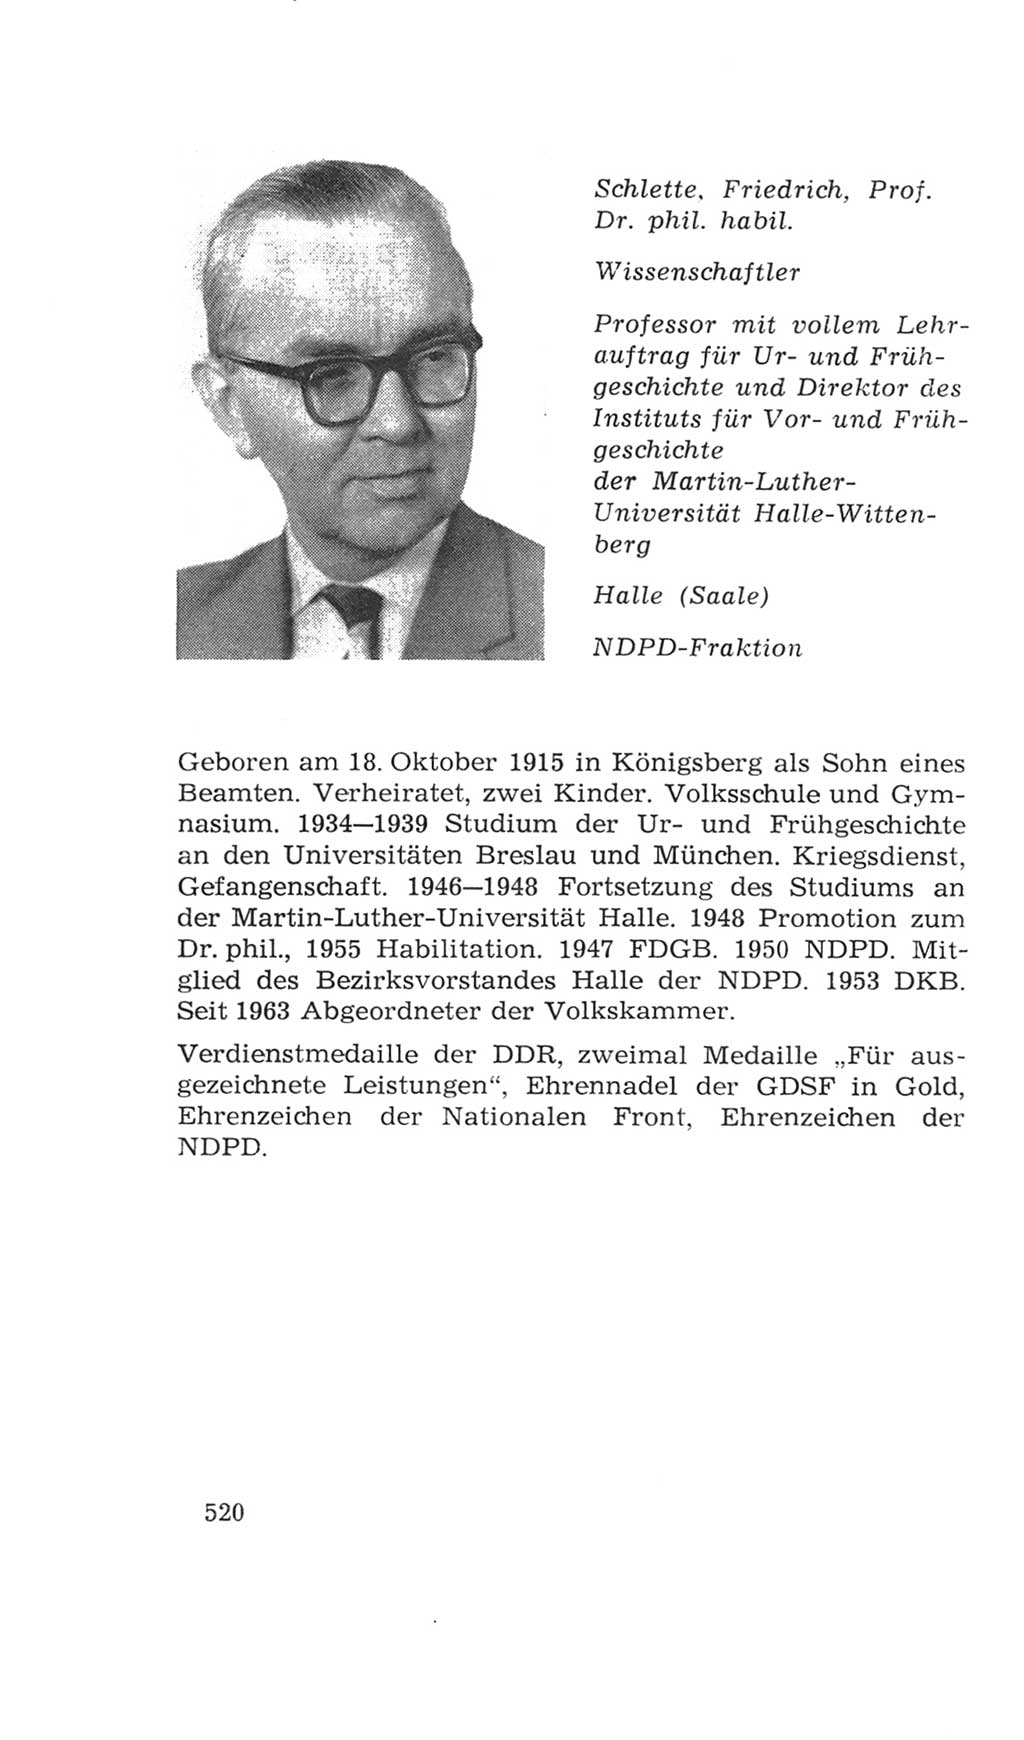 Volkskammer (VK) der Deutschen Demokratischen Republik (DDR), 4. Wahlperiode 1963-1967, Seite 520 (VK. DDR 4. WP. 1963-1967, S. 520)